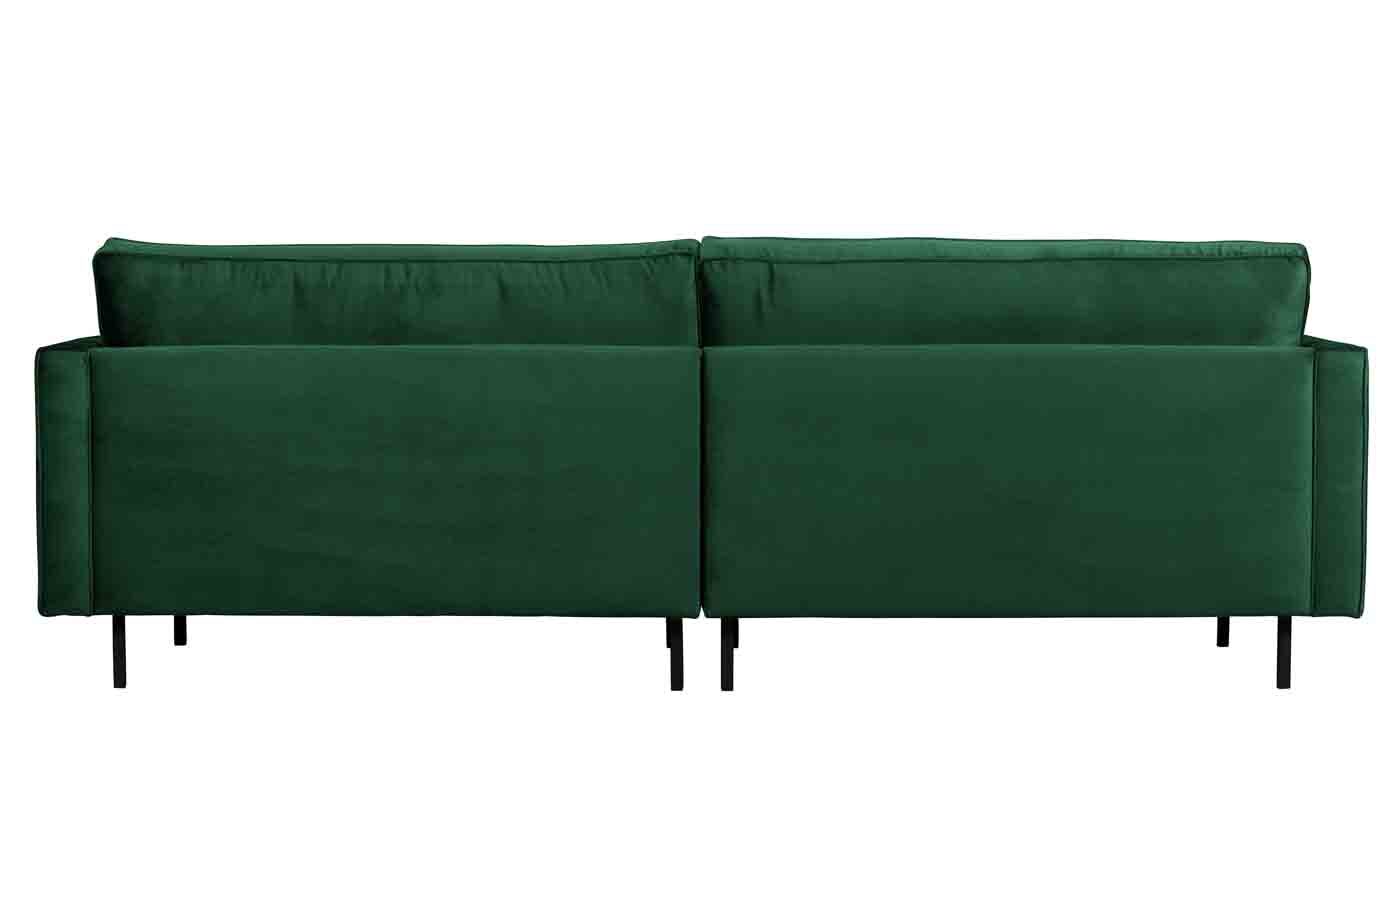 Bequemes Sofa Rodeo Classic mit gesteppten Samtbezug. Hochwertige Verarbeitung und traumhaftes Design